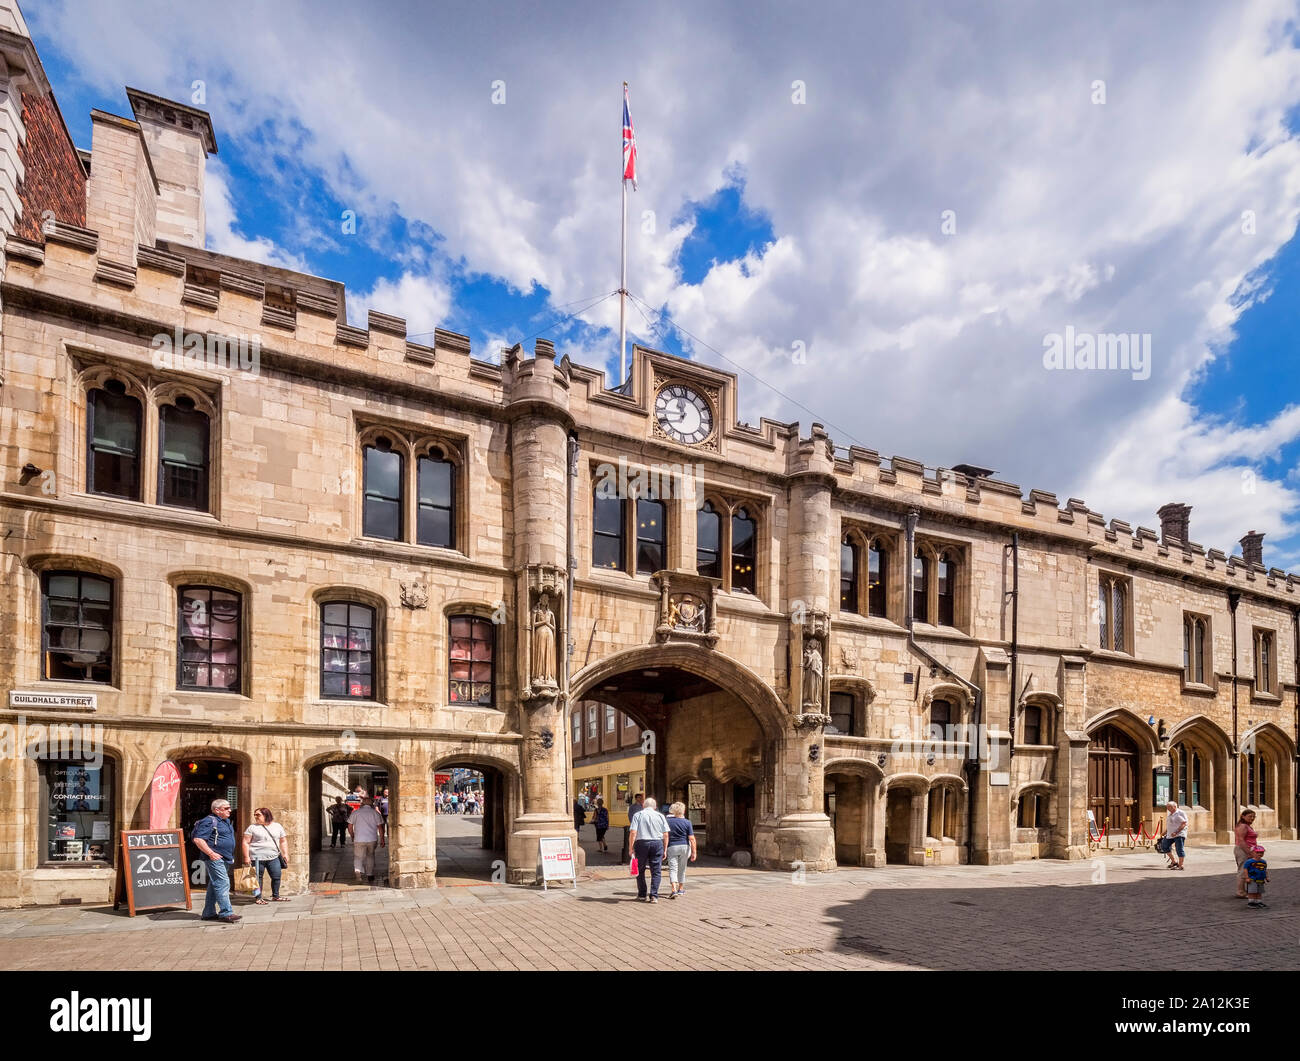 3 Luglio 2019: Lincoln, Lincolnshire, Regno Unito - La Stonebow arco e la Guildhall, un edificio del XVI secolo in Guildhall Street, Lincoln. Foto Stock